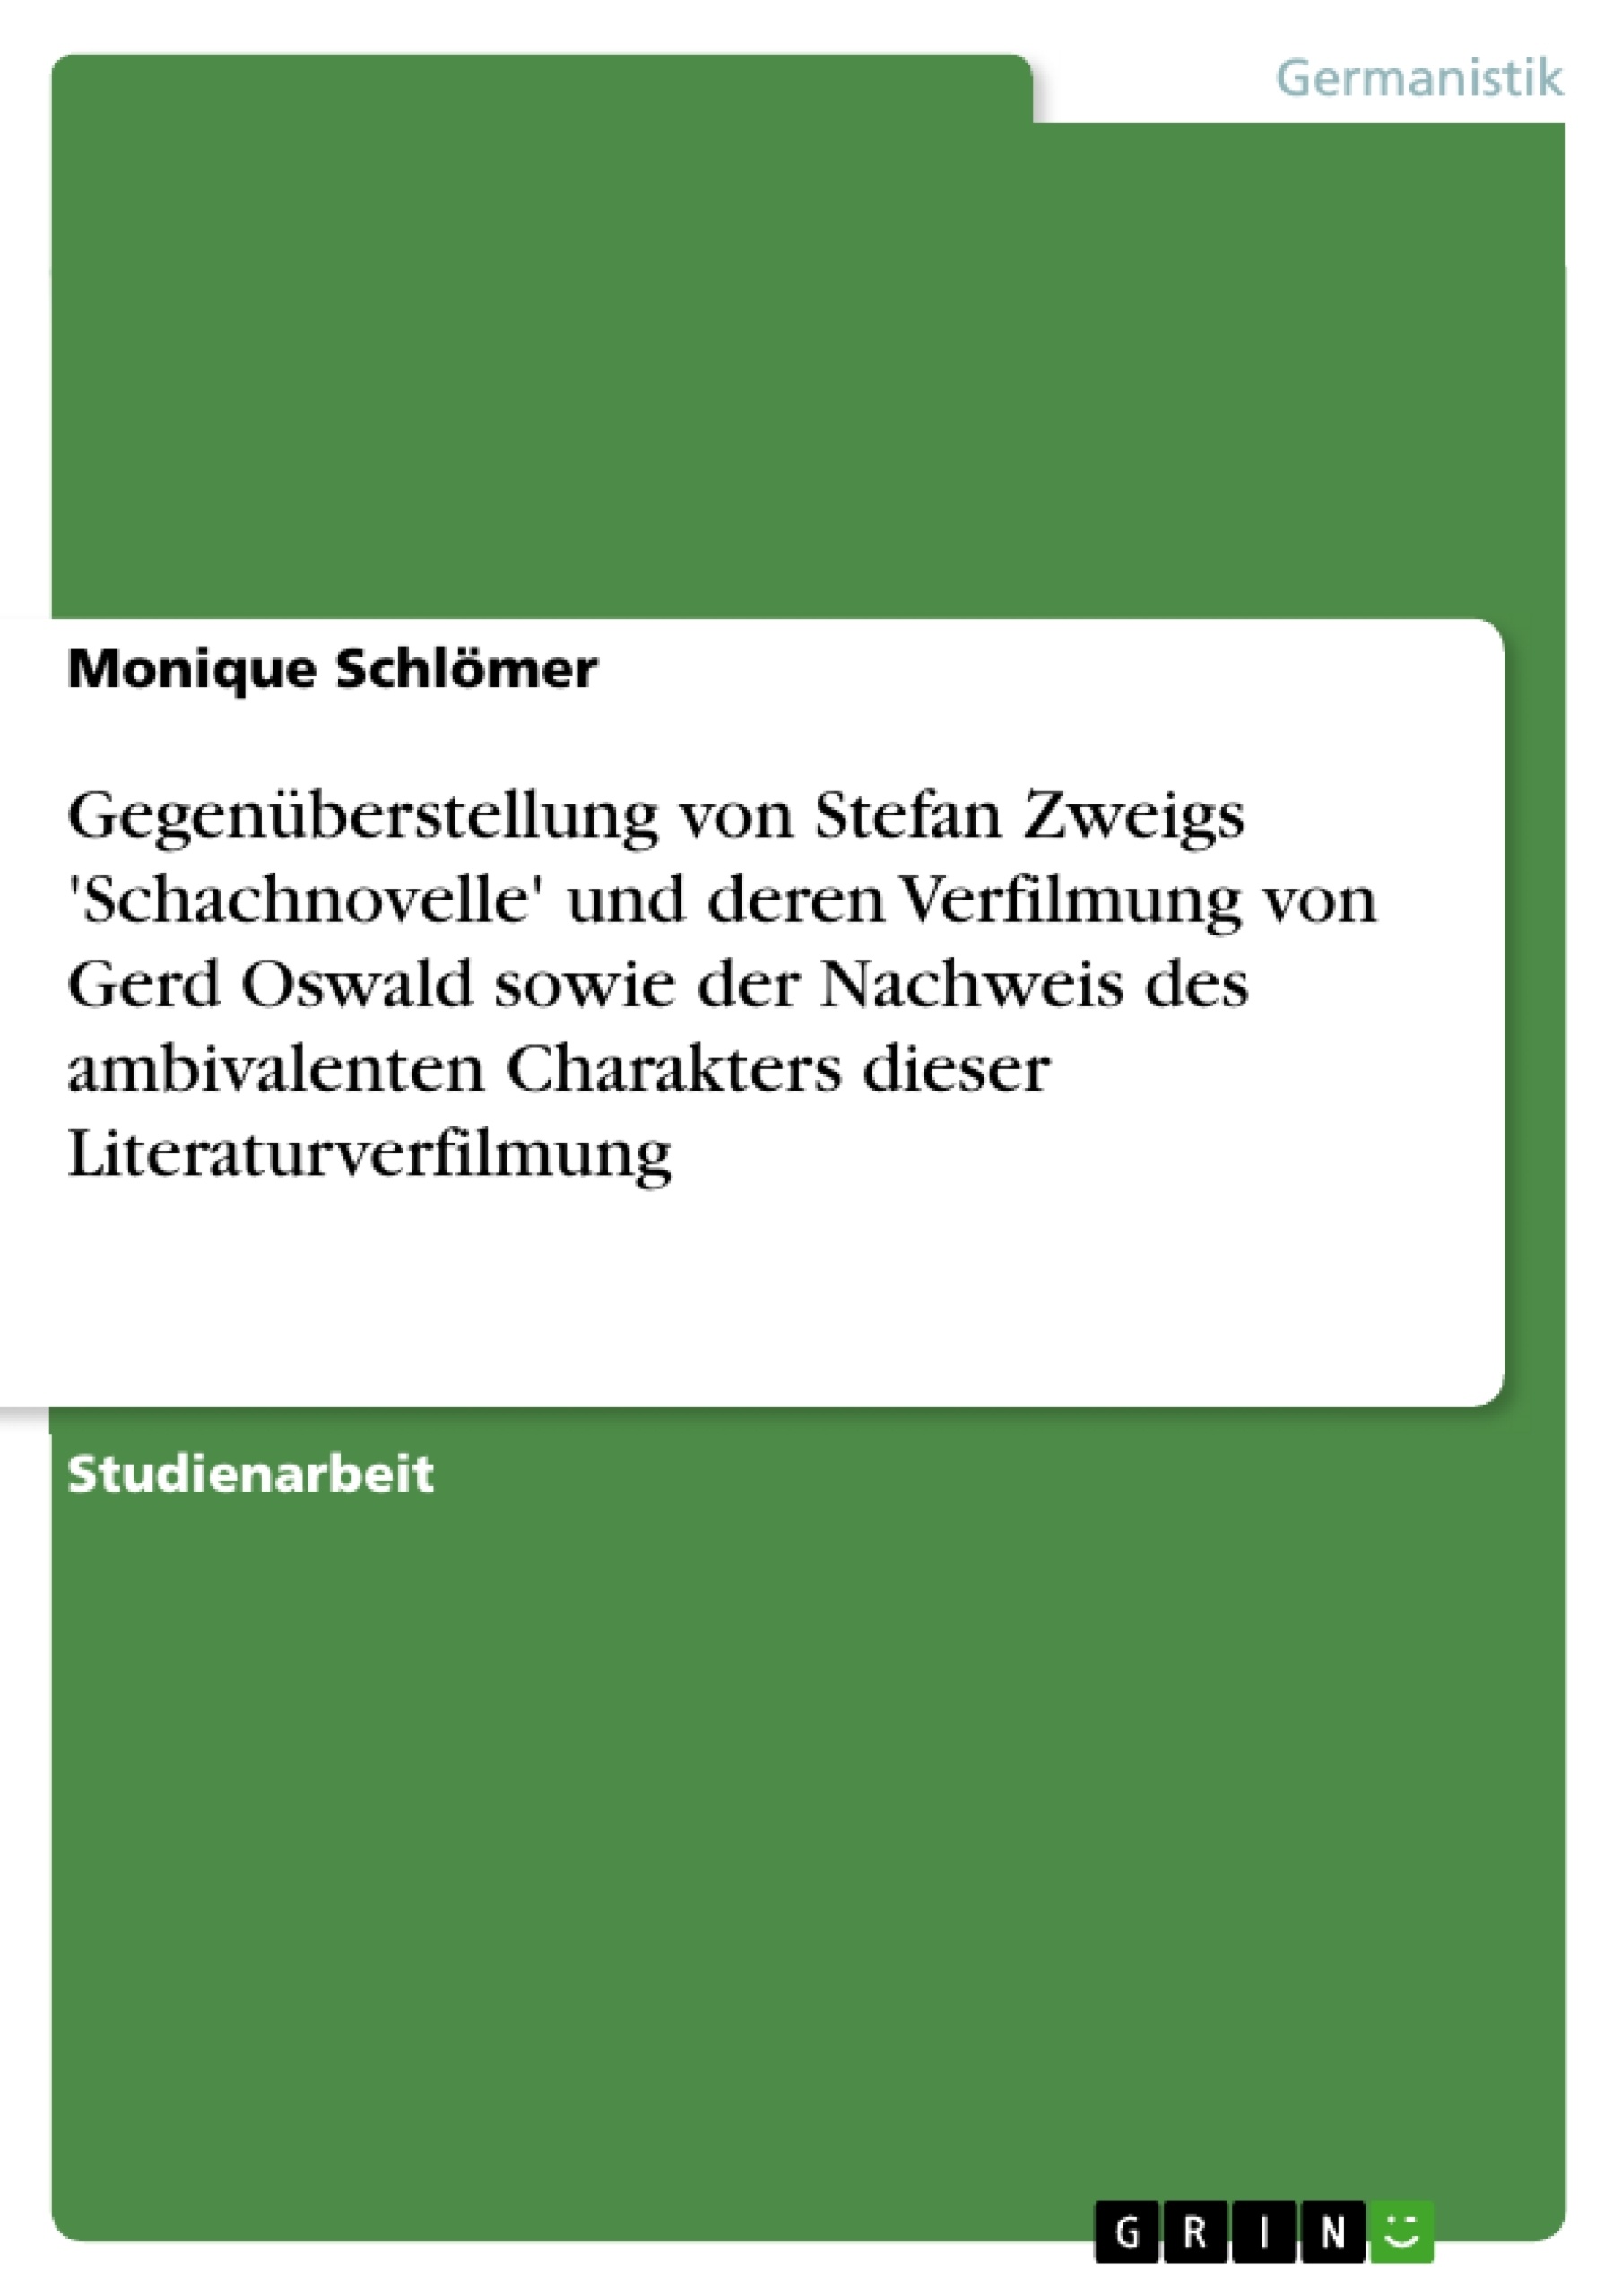 Title: Gegenüberstellung von Stefan Zweigs 'Schachnovelle' und deren Verfilmung von Gerd Oswald sowie der Nachweis des ambivalenten Charakters dieser Literaturverfilmung